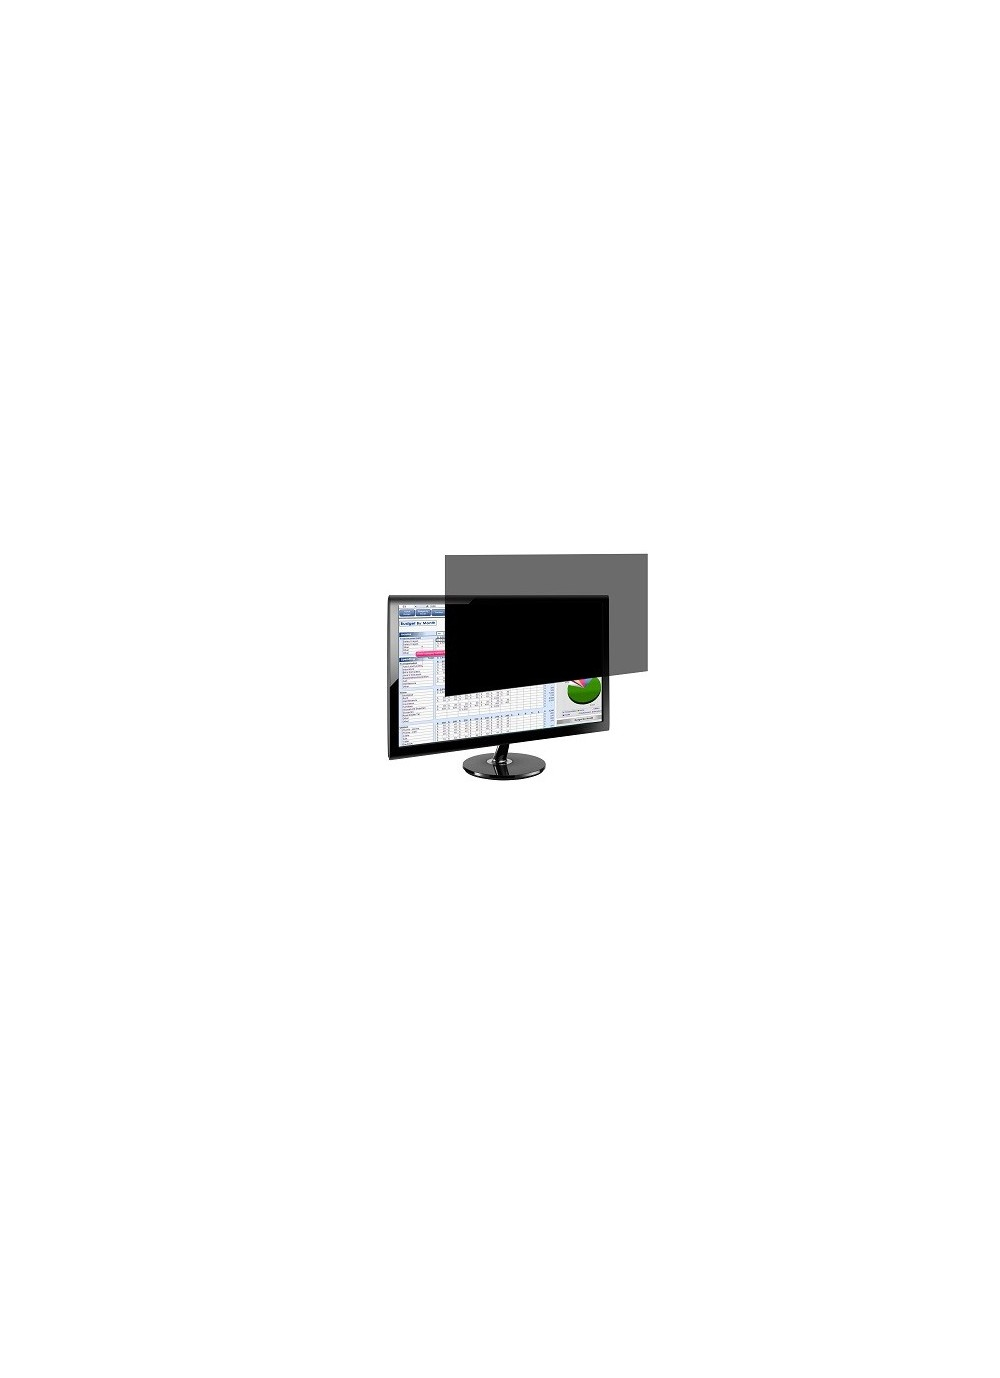 PORT Designs PORT Professional - Blickschutzfilter für Bildschirme - 56,1 cm Breitbild (22,1" Breitbild)